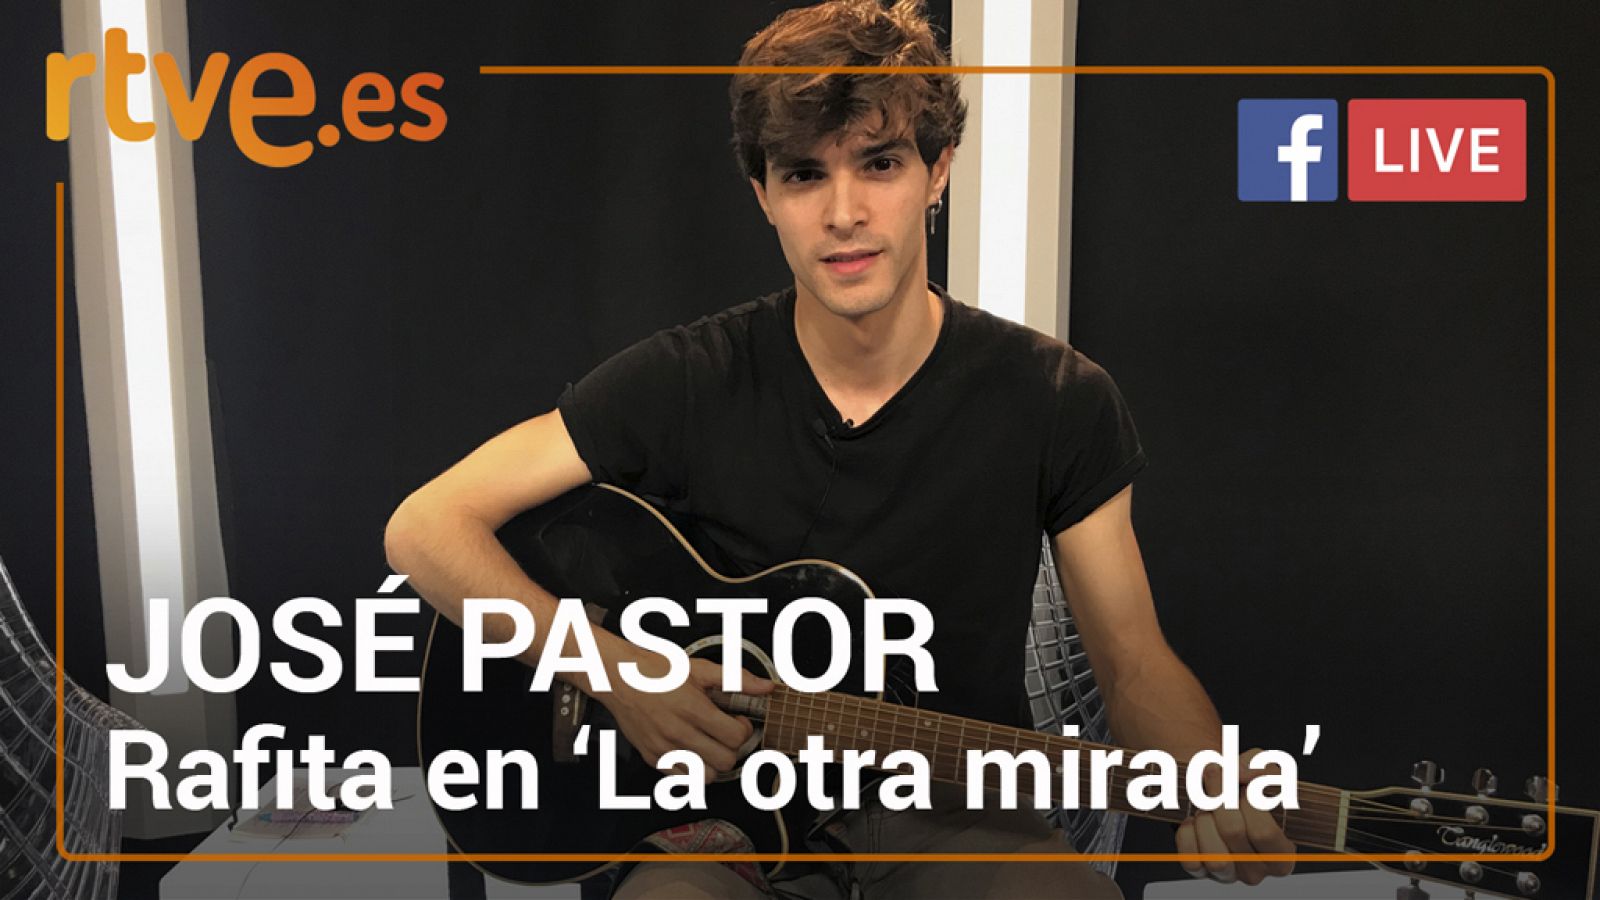 José Pastor, Rafita en 'La otra mirada'